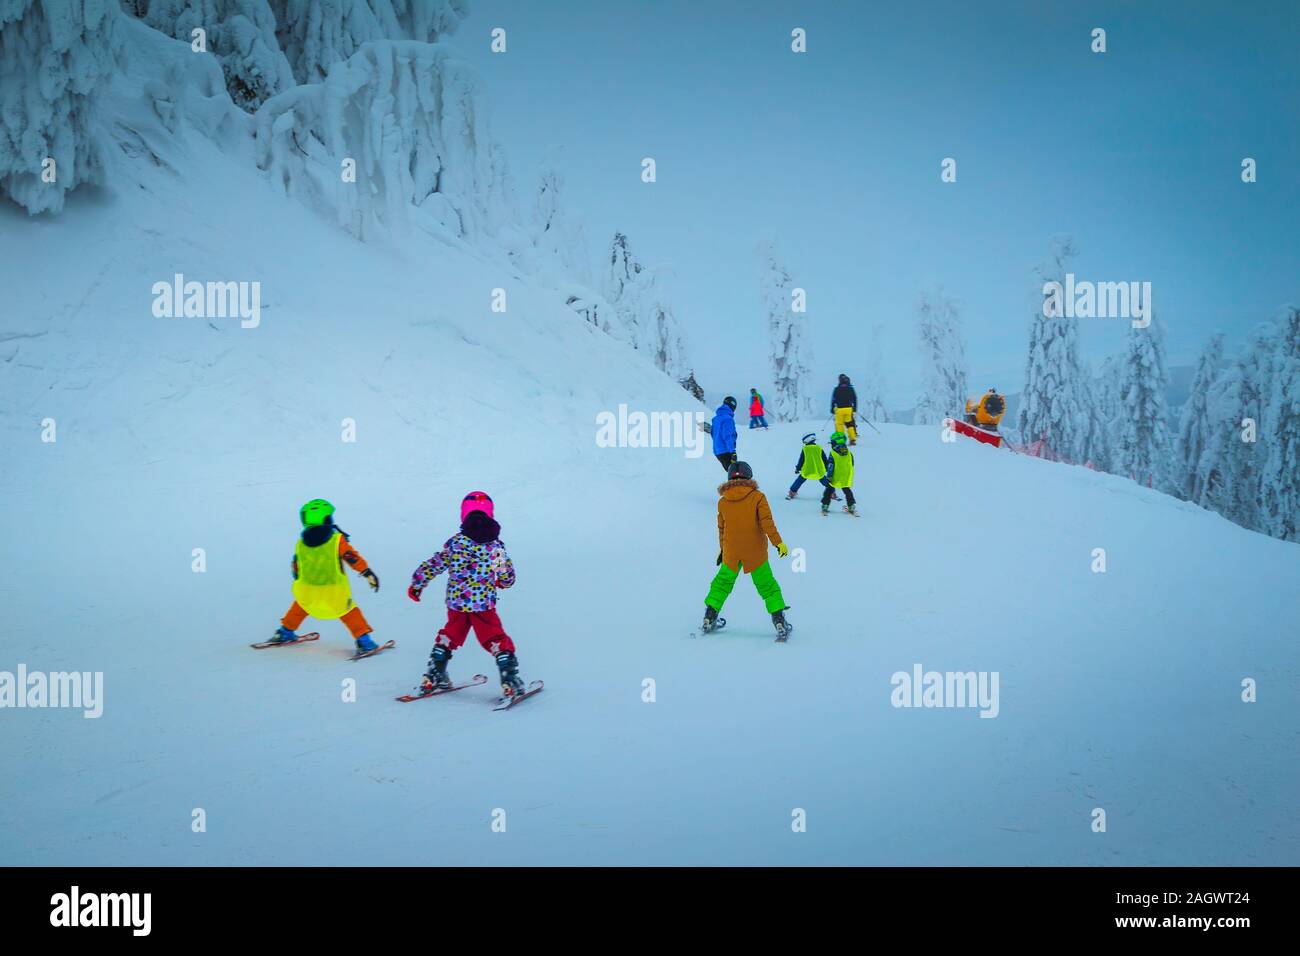 Maestose coperte di neve e alberi in inverno ski resort. I bambini attivi gli sciatori sci discesa nel popolare Poiana Brasov ski resort, Transilvania, Romania, Euro Foto Stock